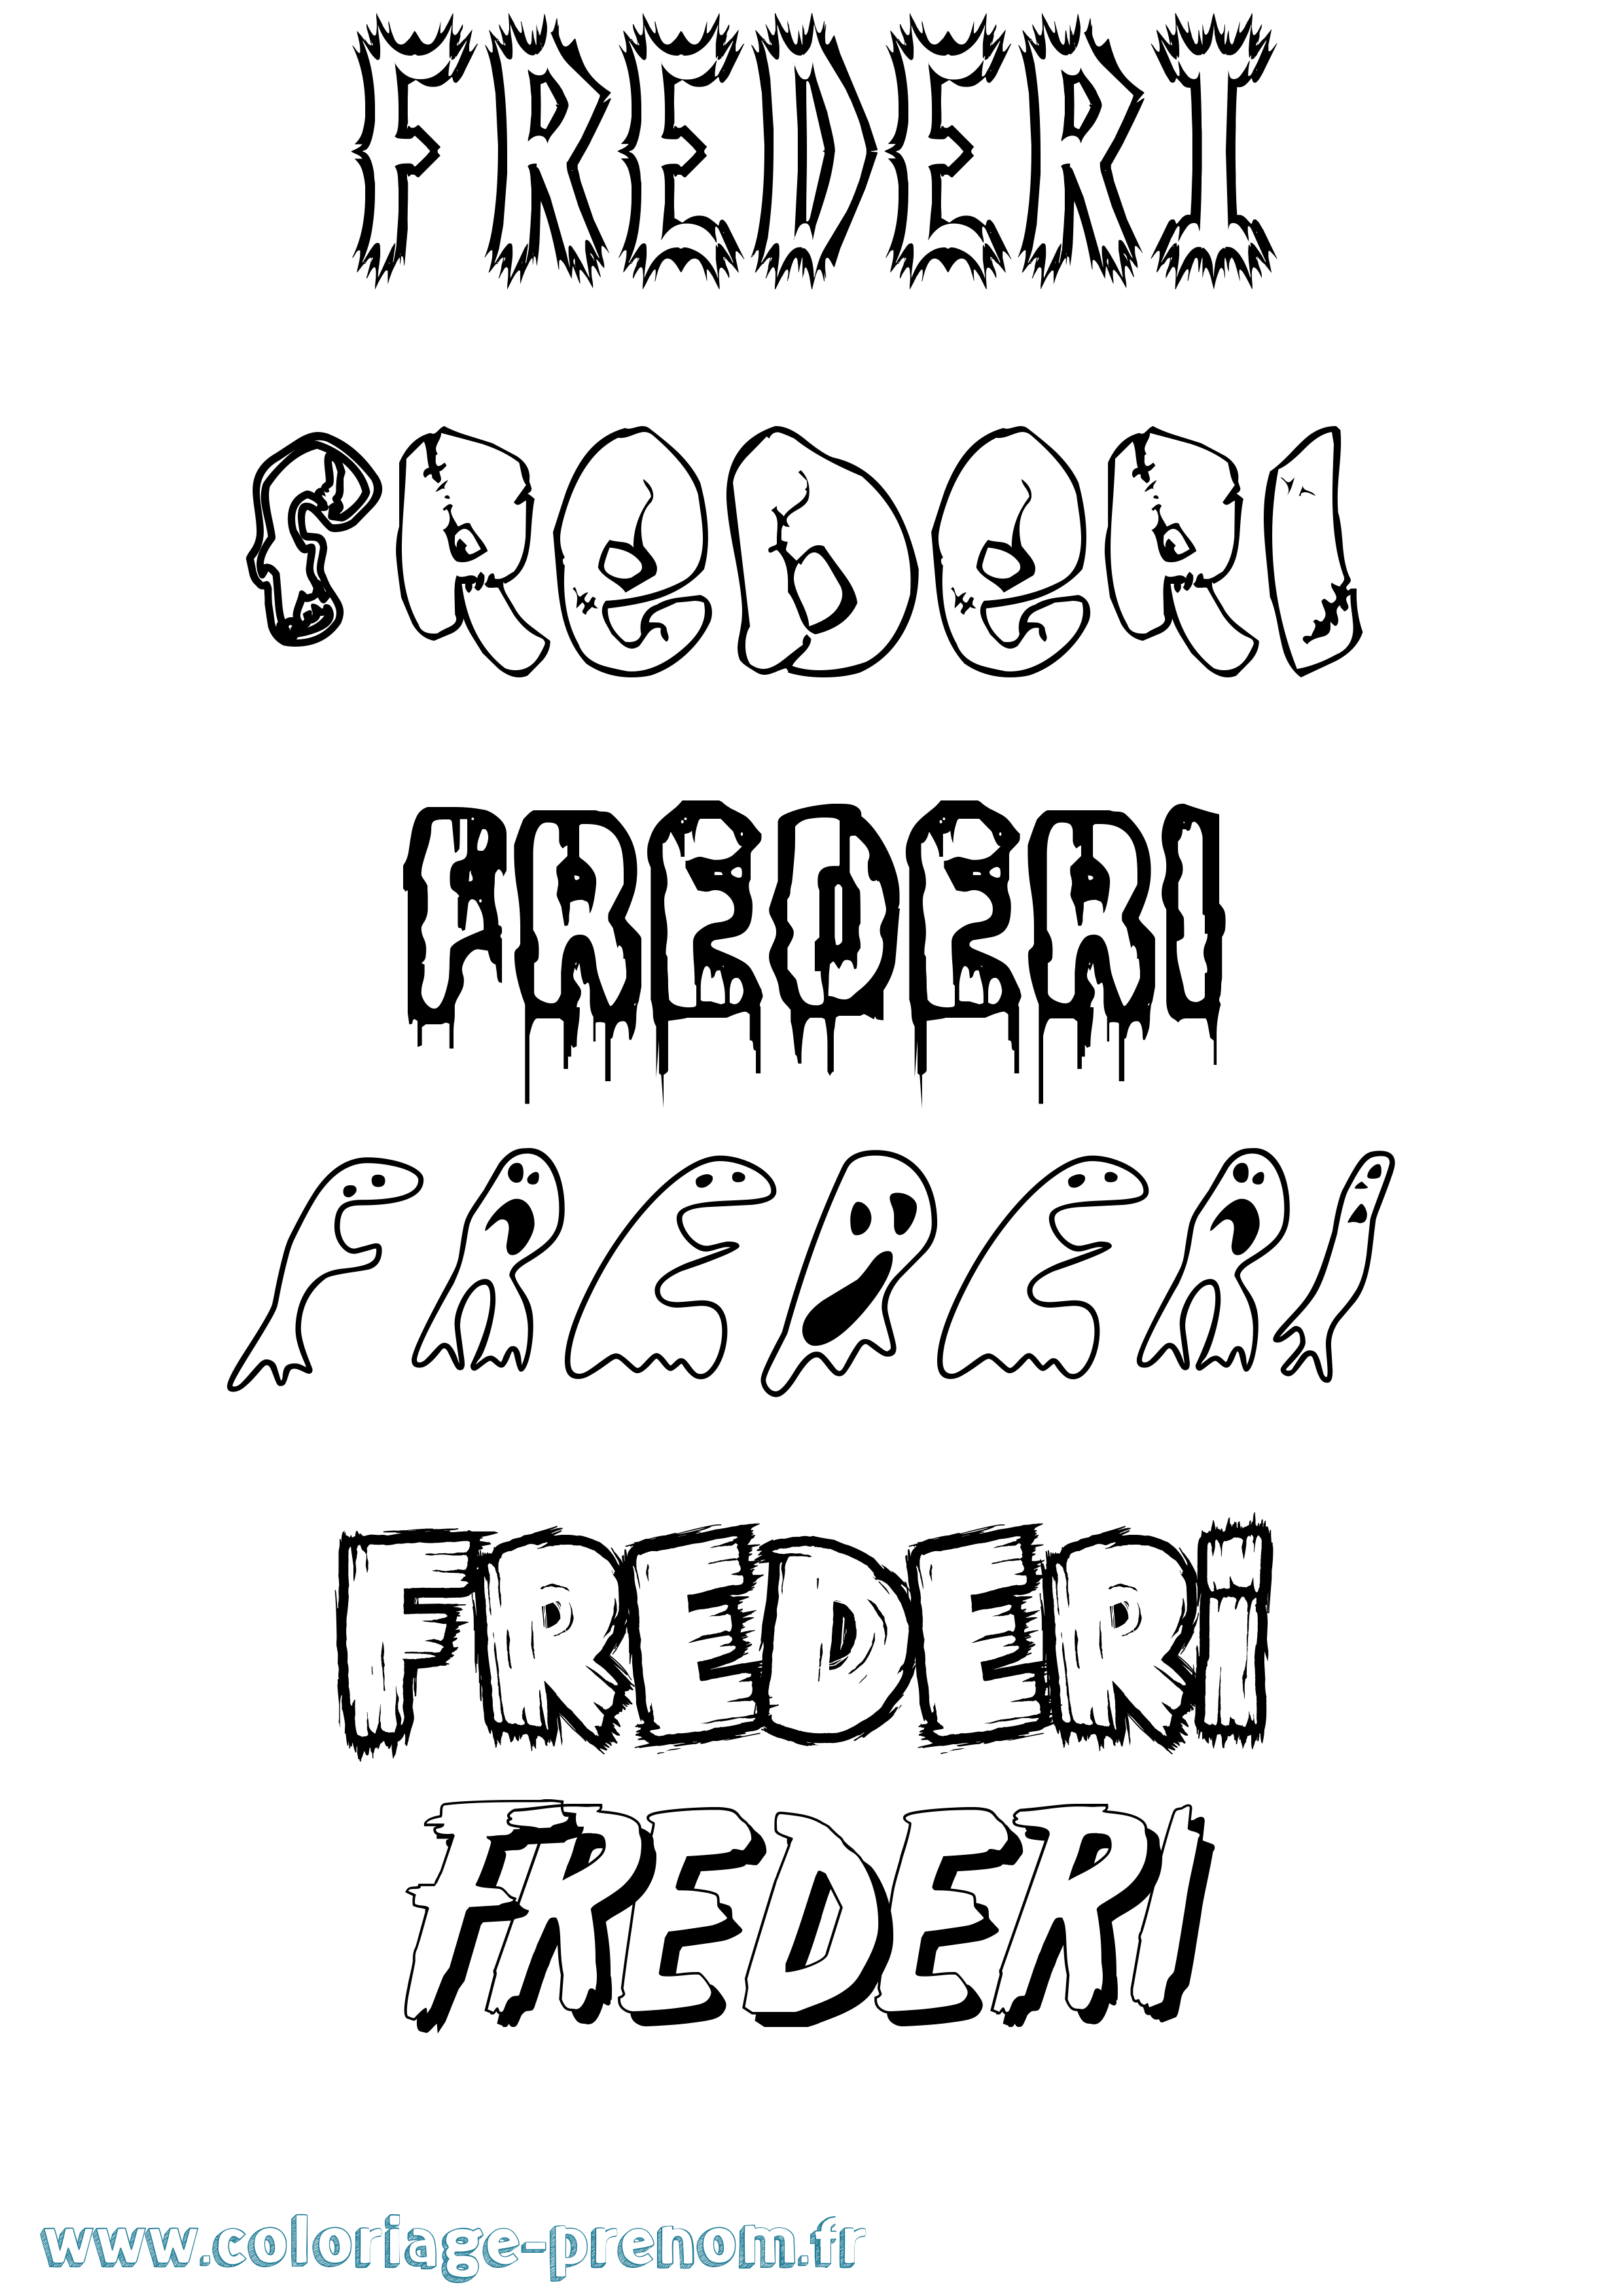 Coloriage prénom Frederi Frisson